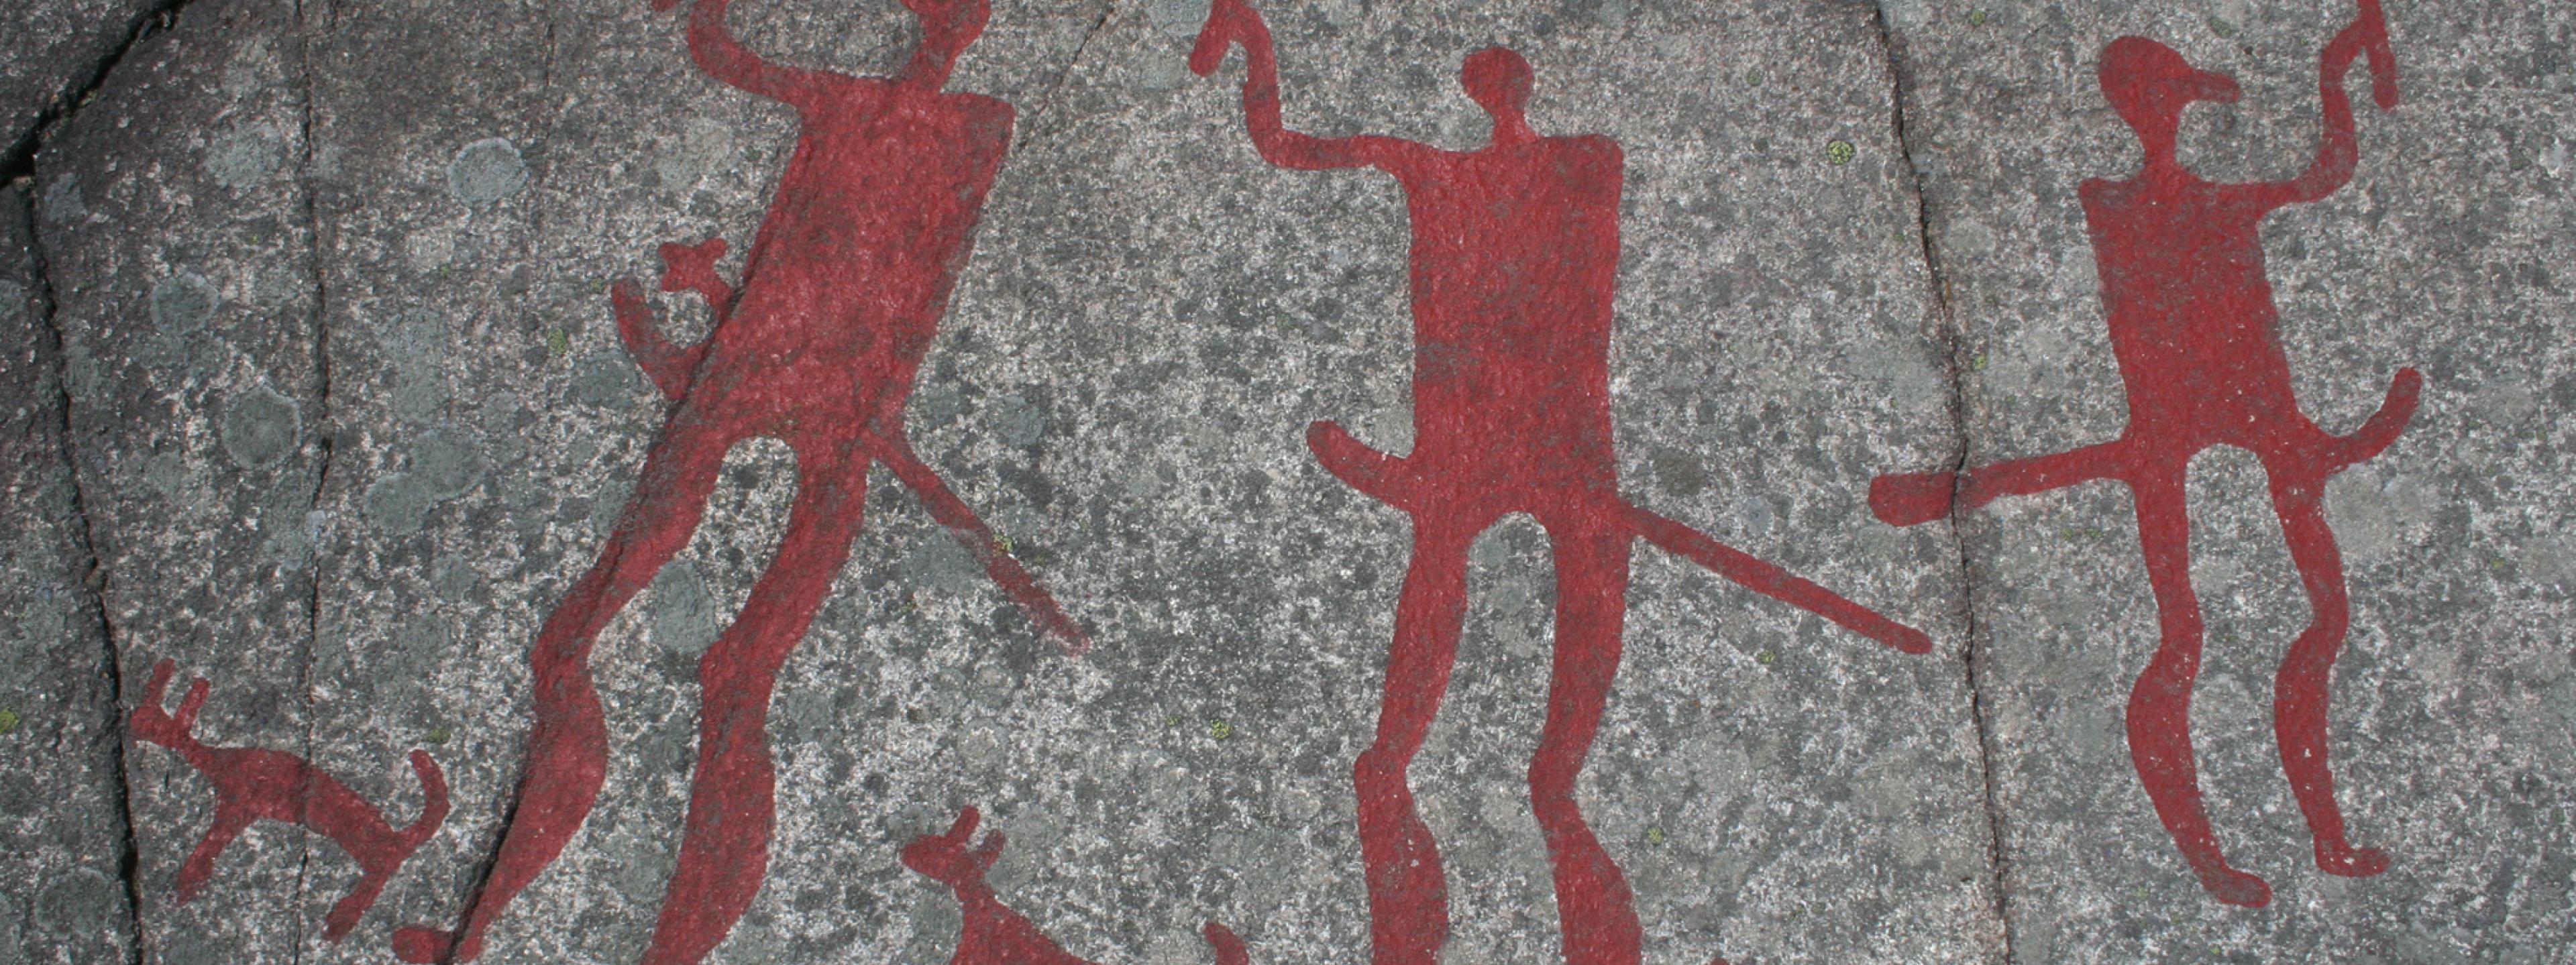 Das Foto zeigt eine Jahrtausende alte Felszeichnung aus der Gemeinde Tanum in Schweden. Prähistorische Menschen haben dort Bilder in den grauen Felsen geritzt und mit leuchtend roten Farben hervorgehoben. Zu sehen sind drei kriegerisch wirkende Figuren sowie drei Hunde.